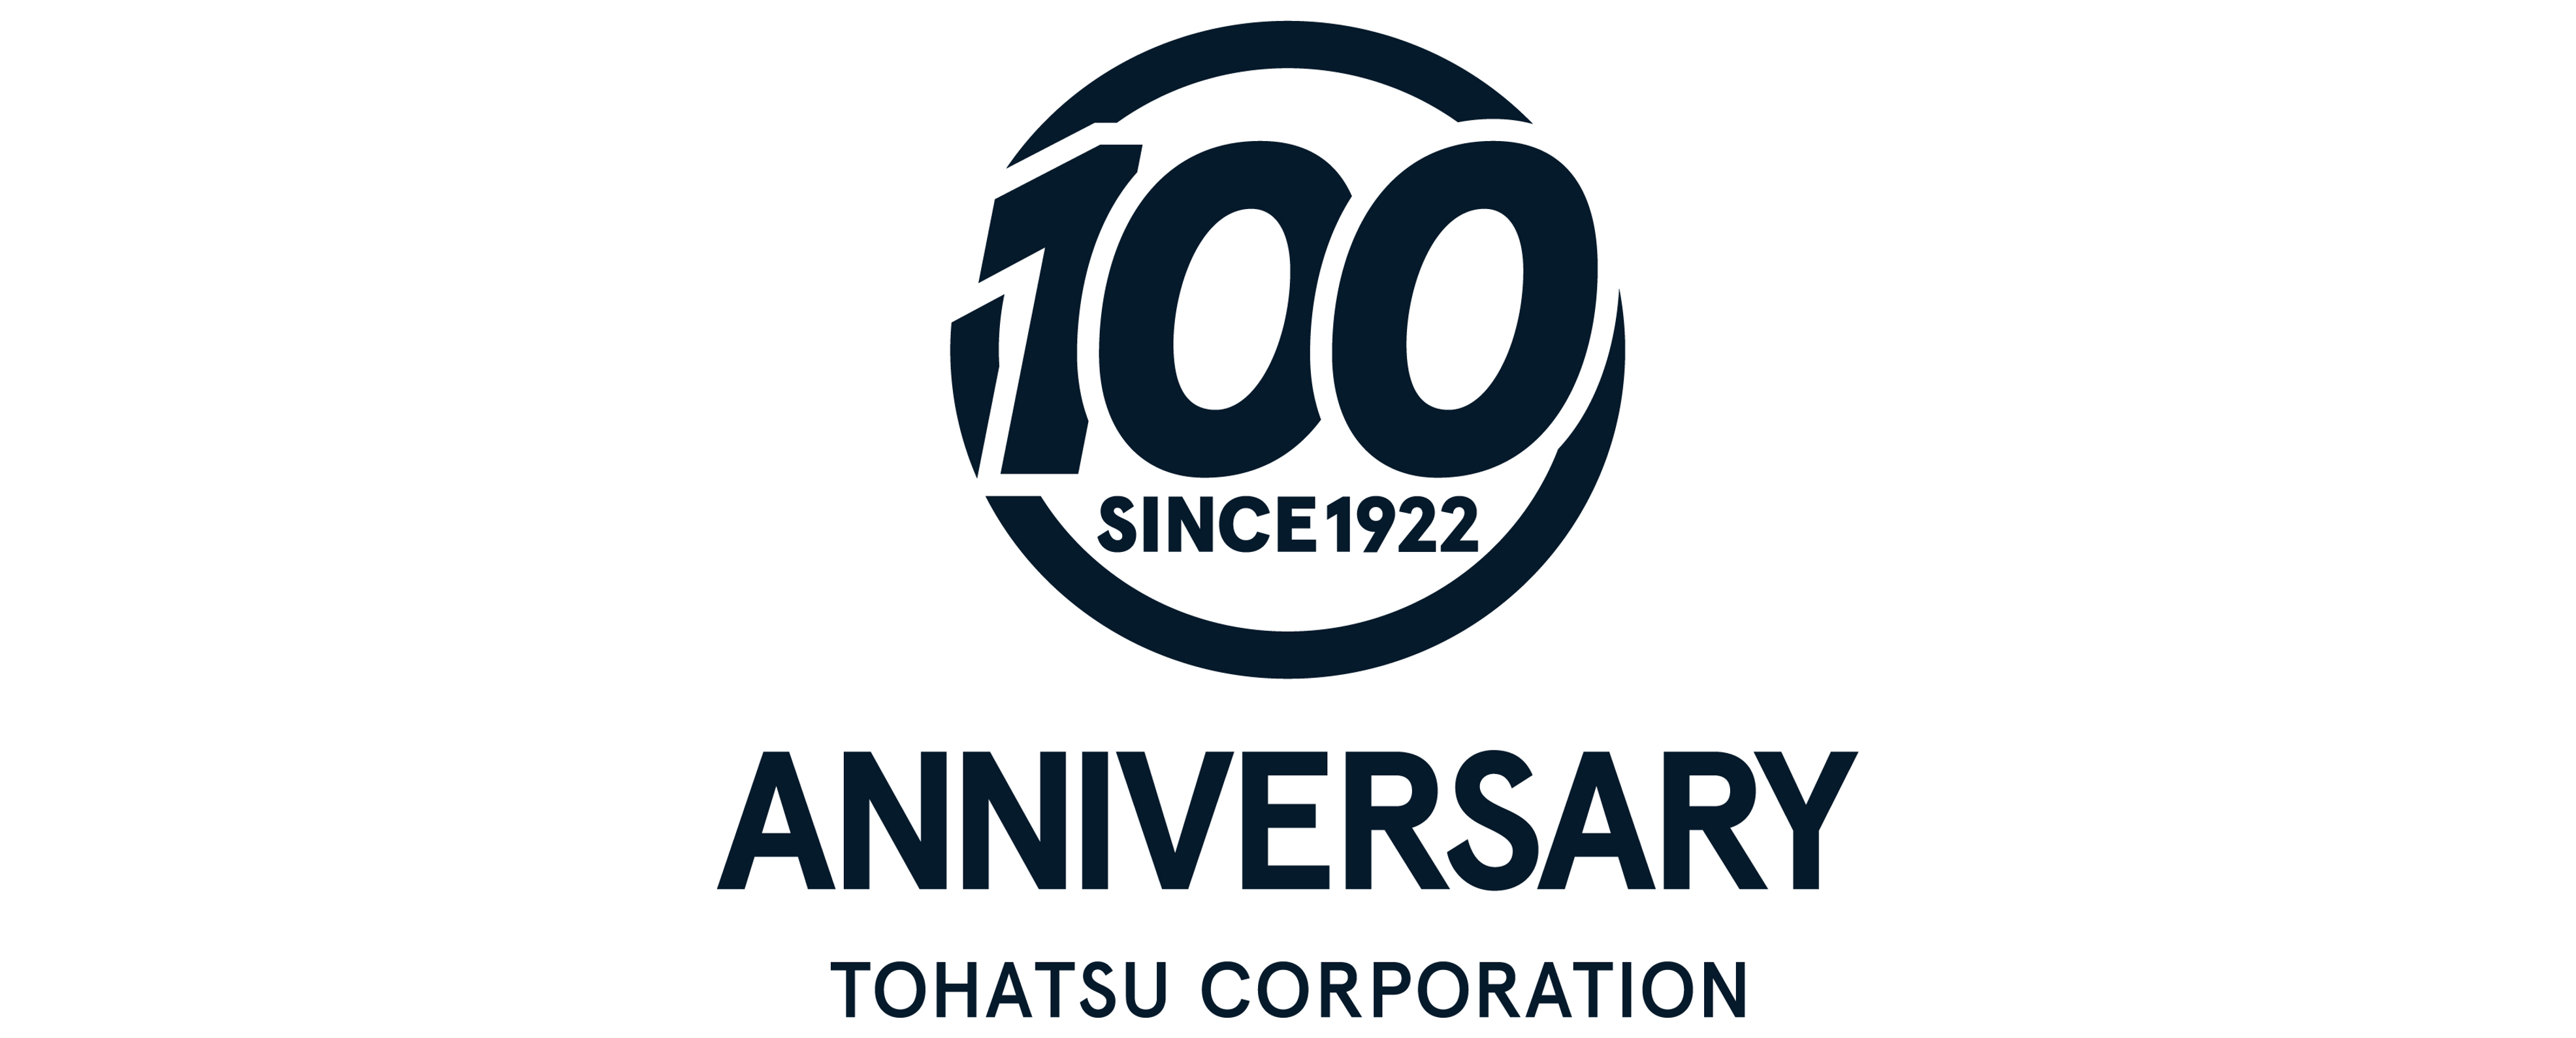 2022年4月に創業100周年を迎えます。